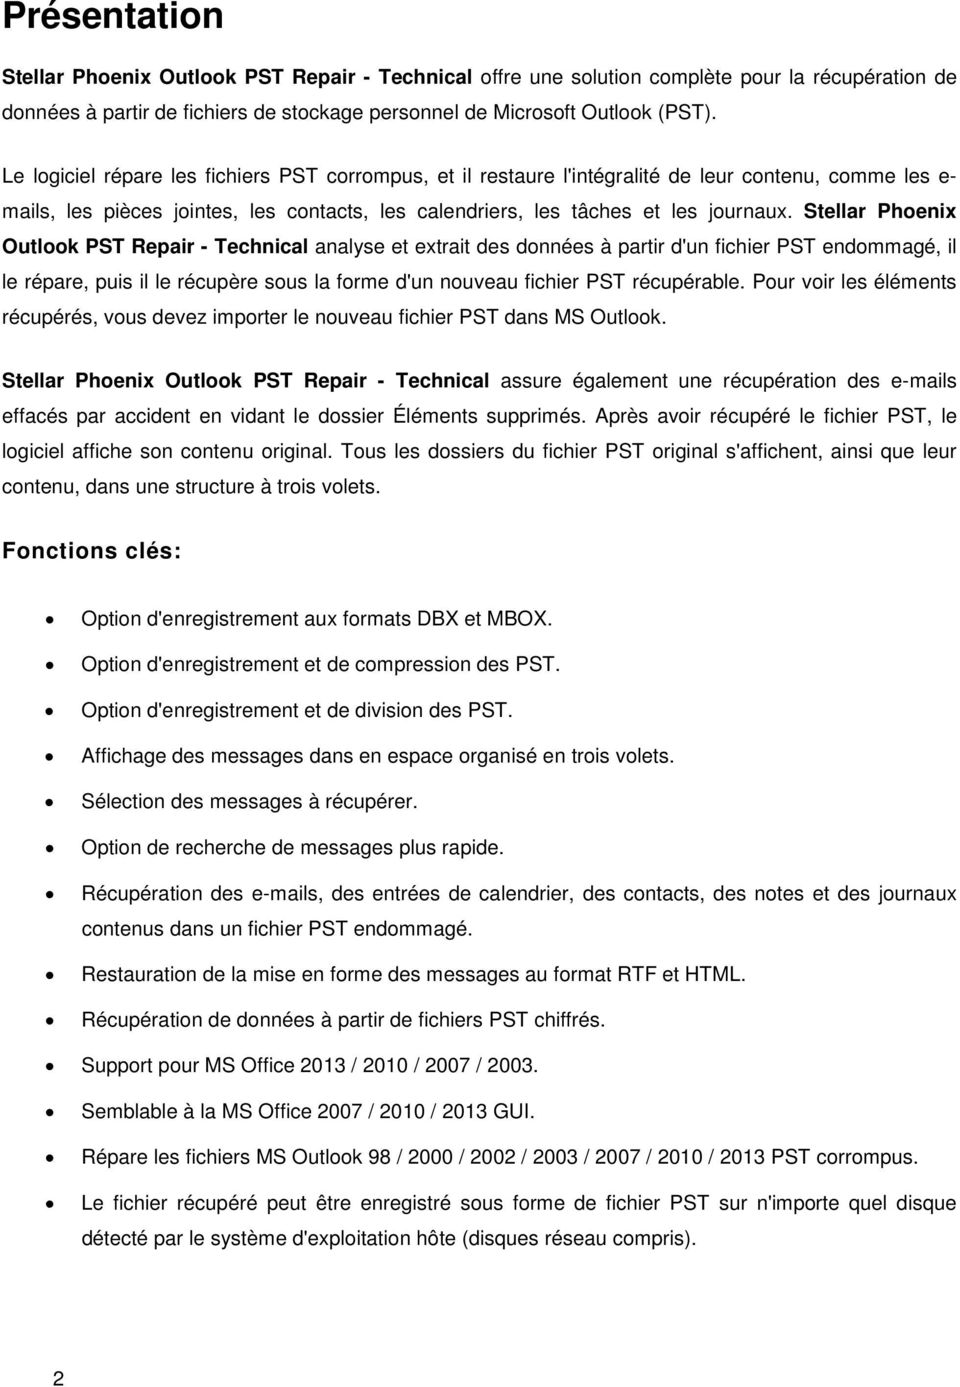 Stellar Phoenix Outlook PST Repair - Technical analyse et extrait des données à partir d'un fichier PST endommagé, il le répare, puis il le récupère sous la forme d'un nouveau fichier PST récupérable.